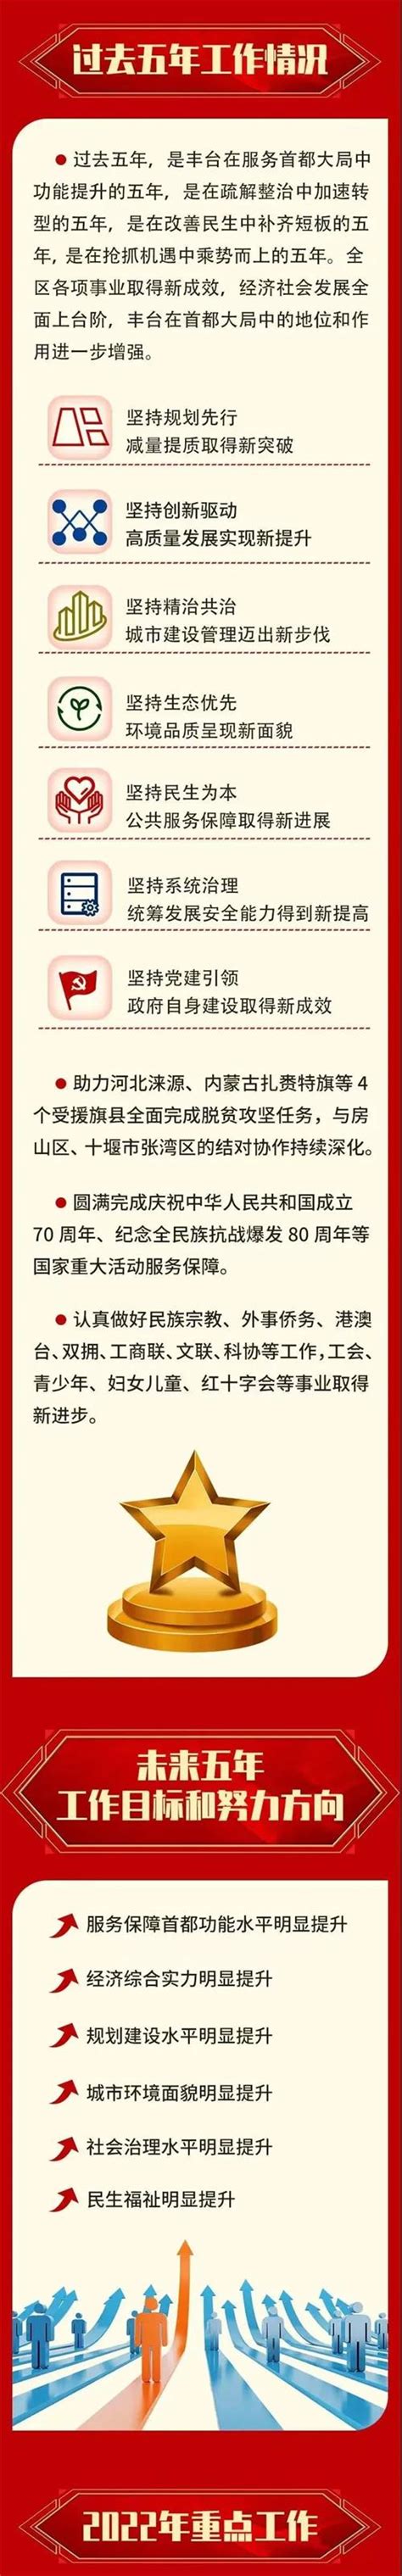 2022年丰台区统计局、调查队统计信息发布计划-北京市丰台区人民政府网站